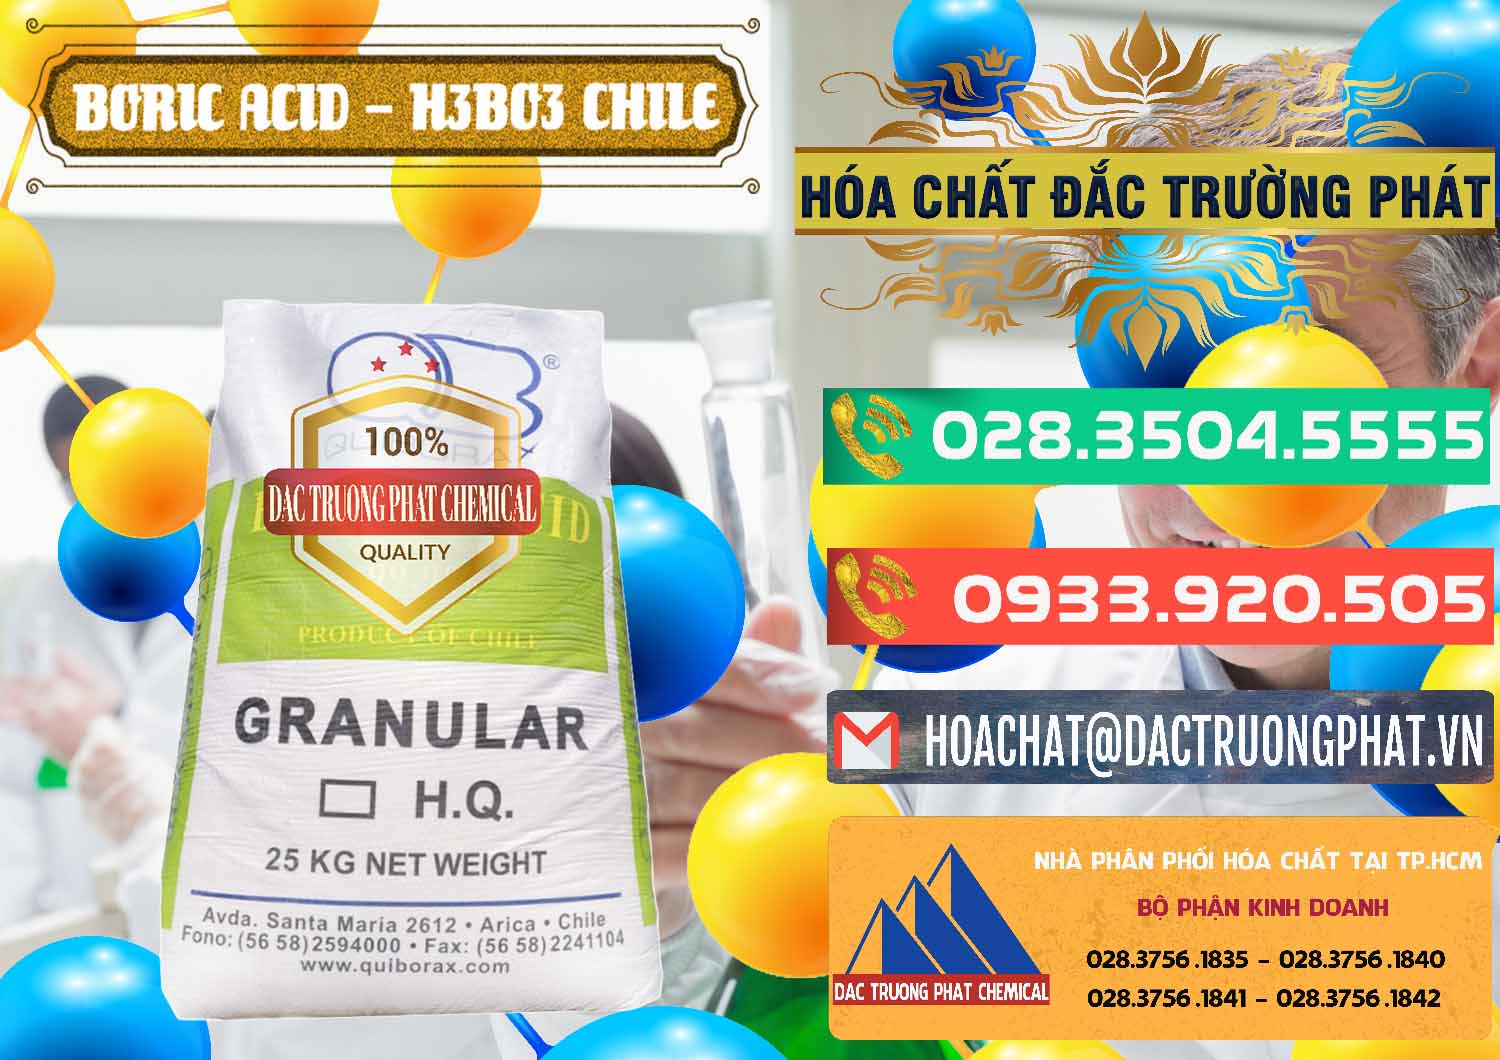 Cty bán & cung ứng Acid Boric – Axit Boric H3BO3 99% Quiborax Chile - 0281 - Nhà cung ứng ( phân phối ) hóa chất tại TP.HCM - congtyhoachat.com.vn